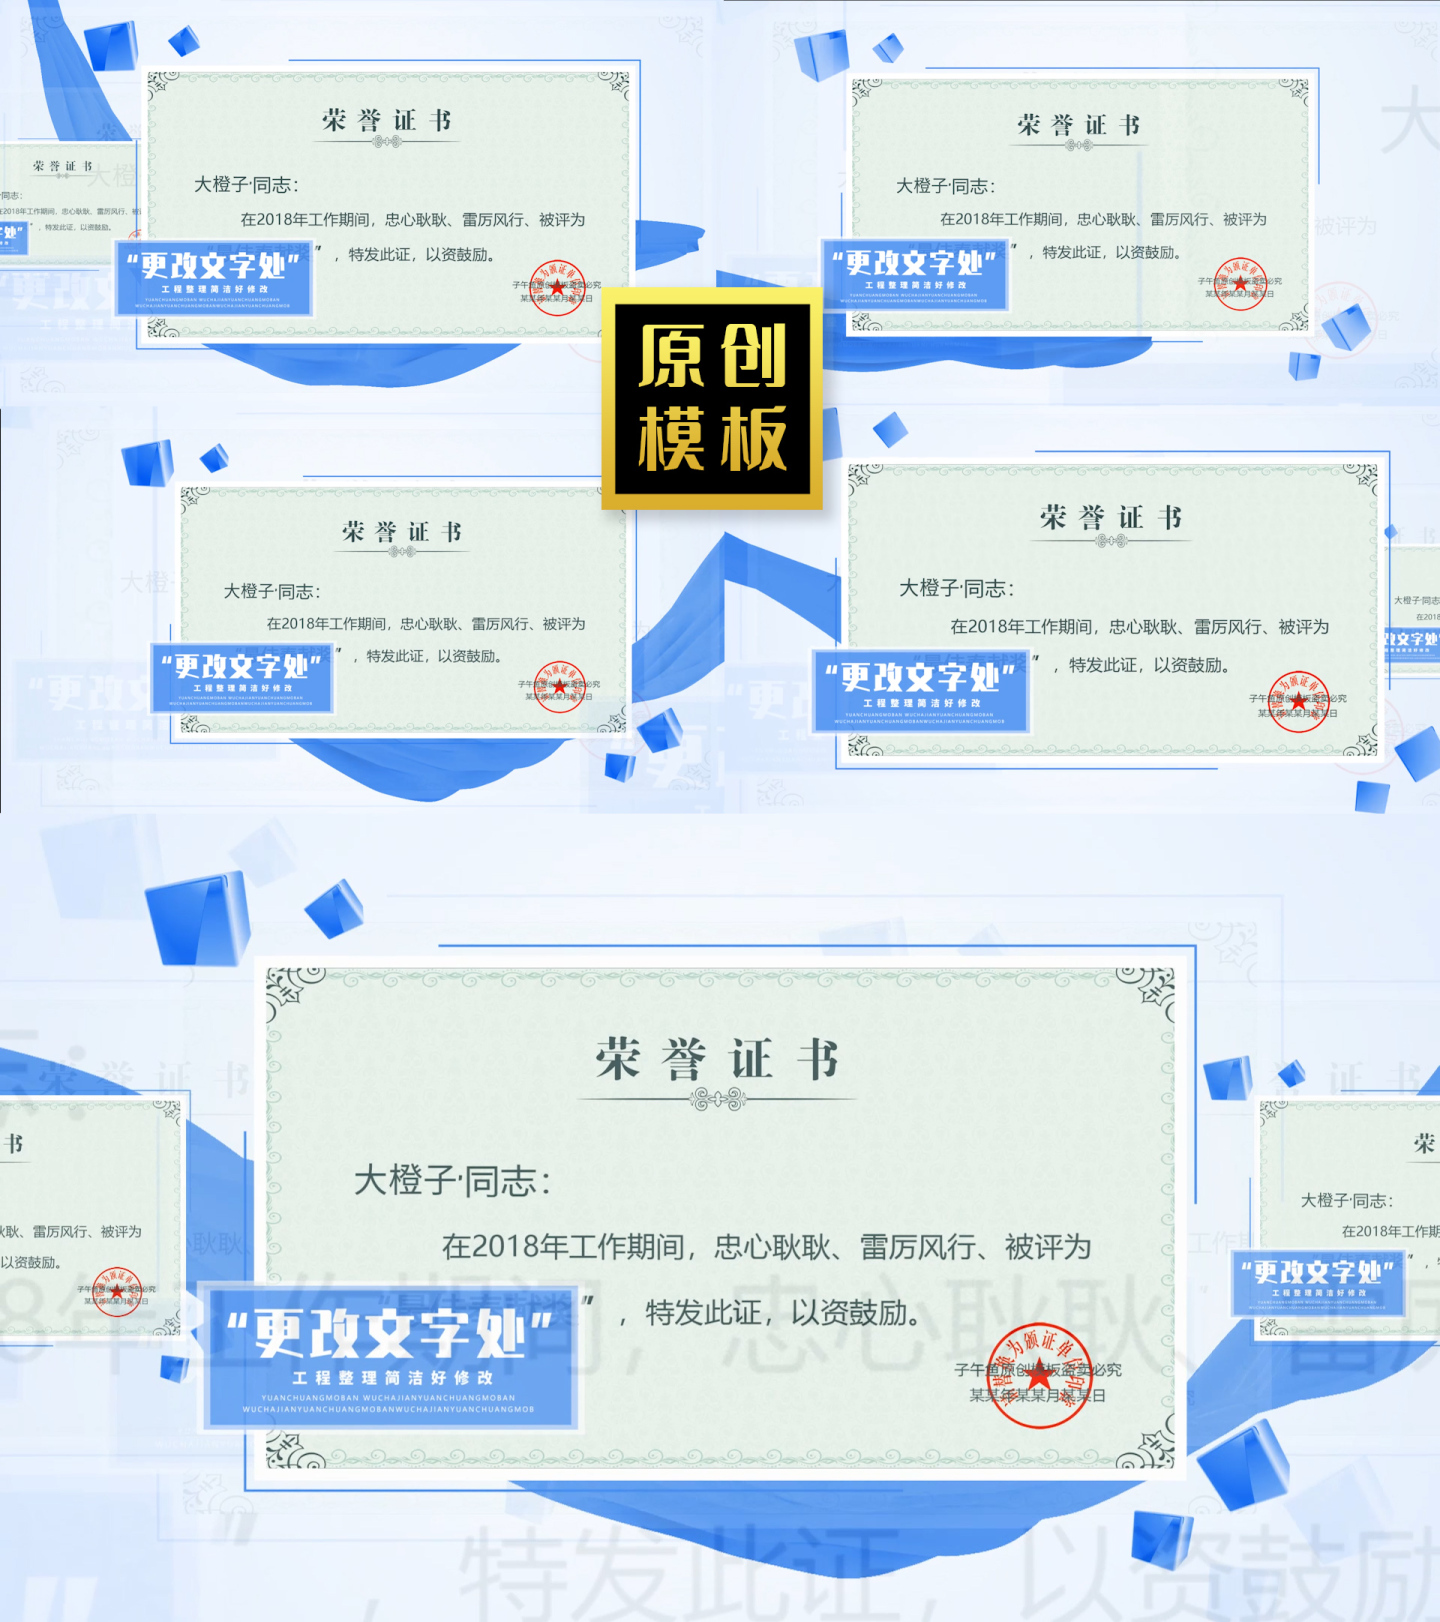 48图干净企业蓝绸图文介绍荣誉证书包装